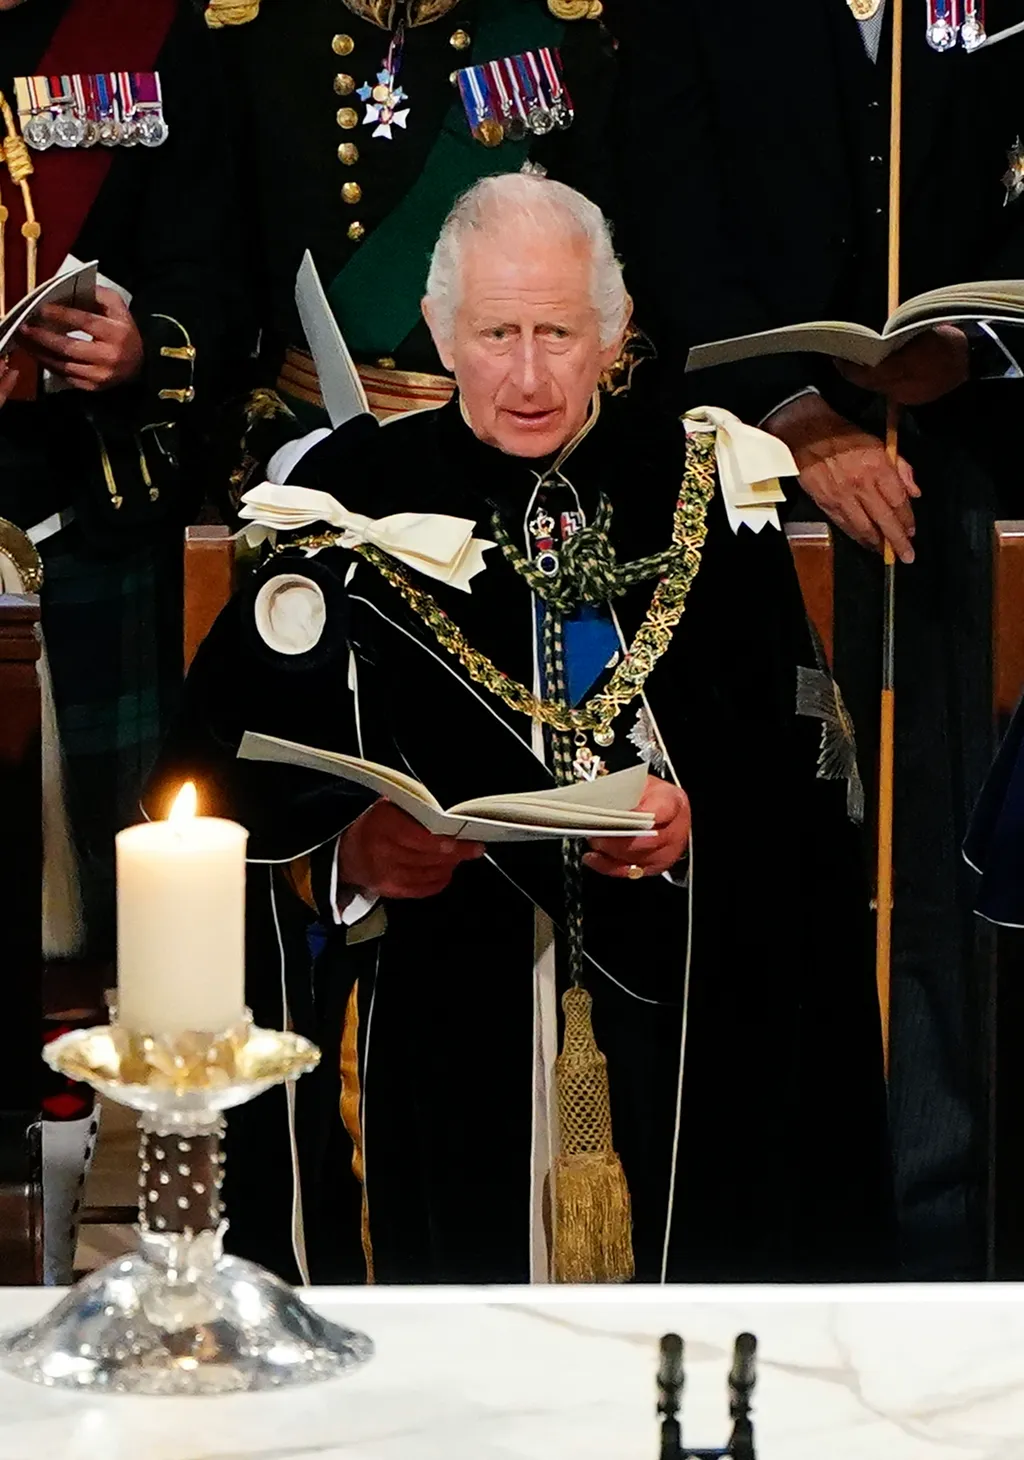 Skócia koronázás III Károly  
III. Károly brit király a koronázása tiszteletére tartott háladó istentiszteleten az edinburgh-i Szent Giles-székesegyházban 2023. július 5-én. A hagyomány szerint a brit uralkodót Skóciában is megkoronázzák, és ünne 